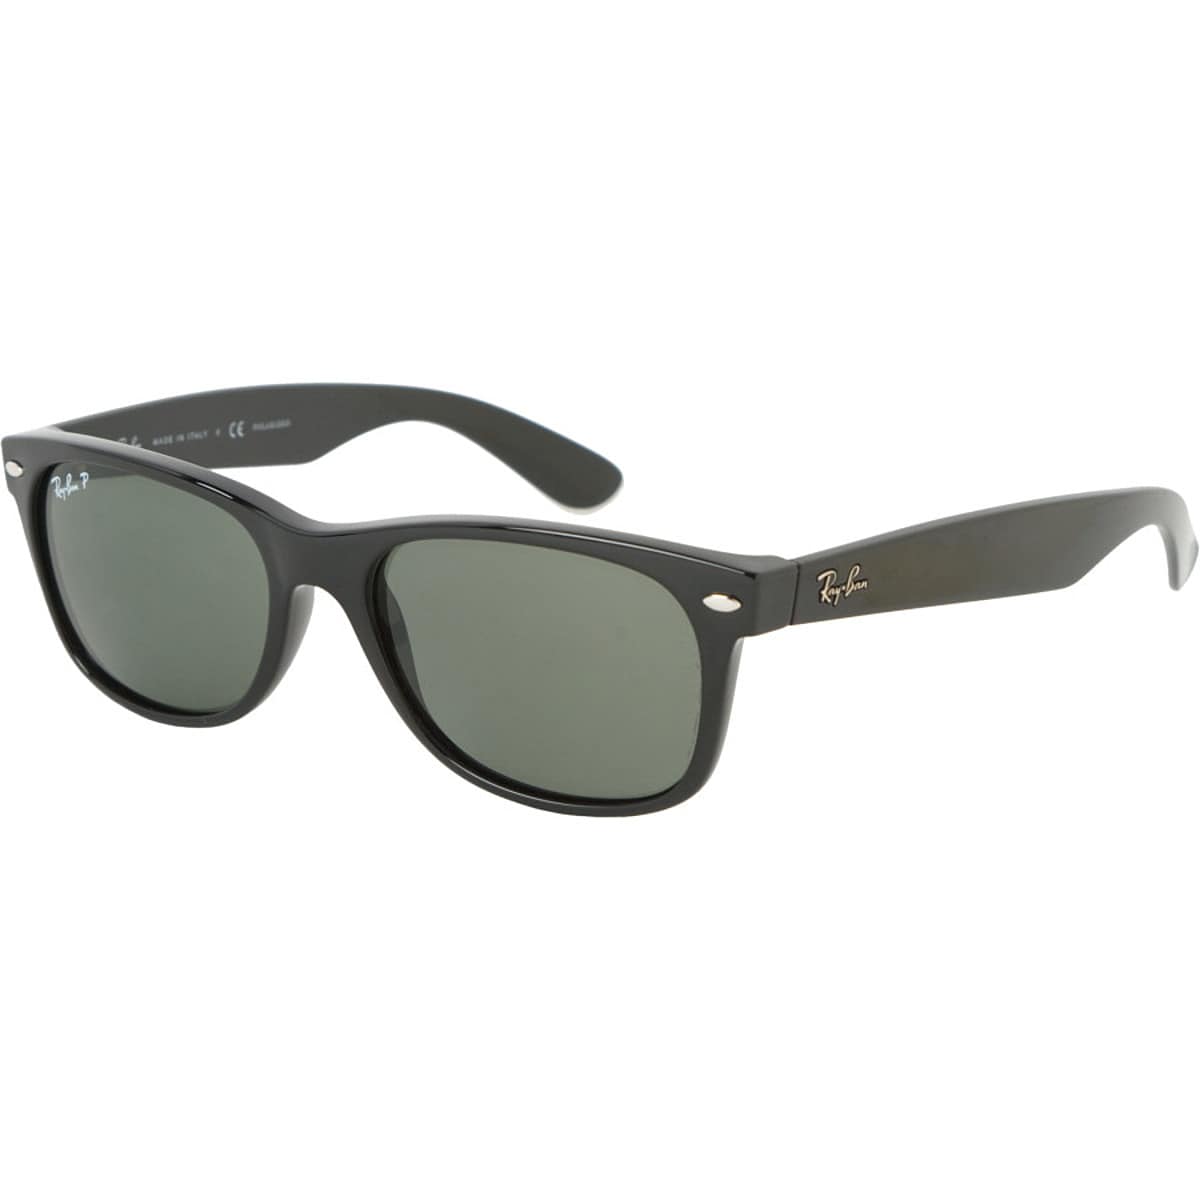 Новые поляризованные солнцезащитные очки wayfarer Ray-Ban, цвет black/crystal natural green